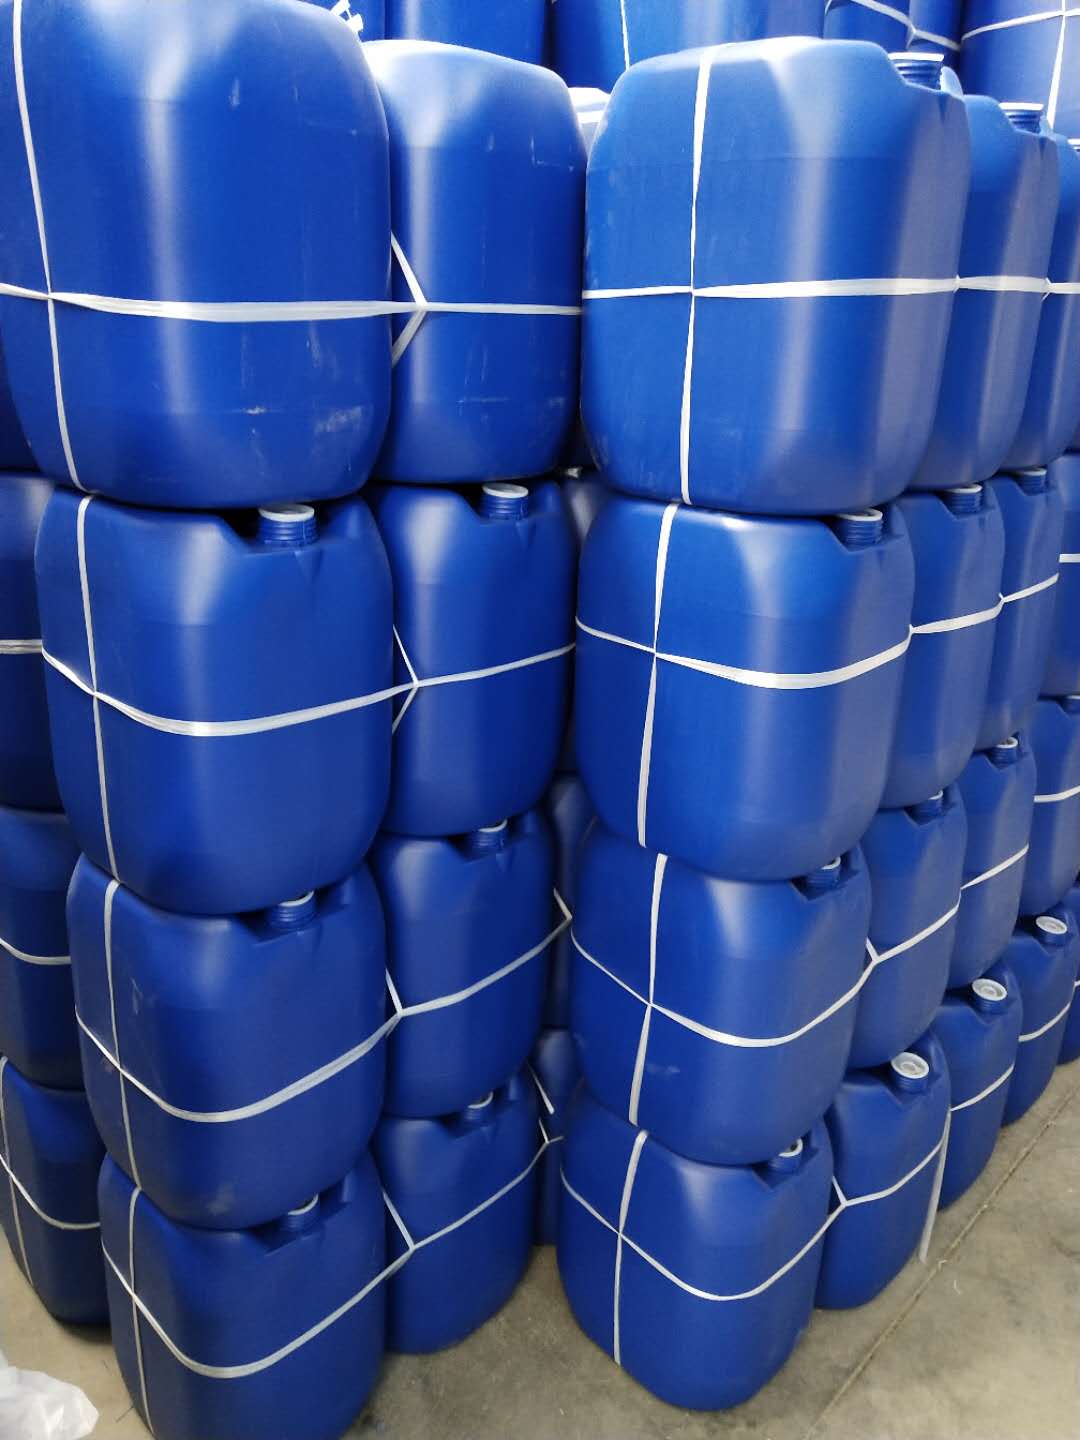 佛山30升塑料桶|塑胶桶|塑料桶||包装桶|厂家直销|批发价格|哪家好|哪家便宜 30升塑料桶图片